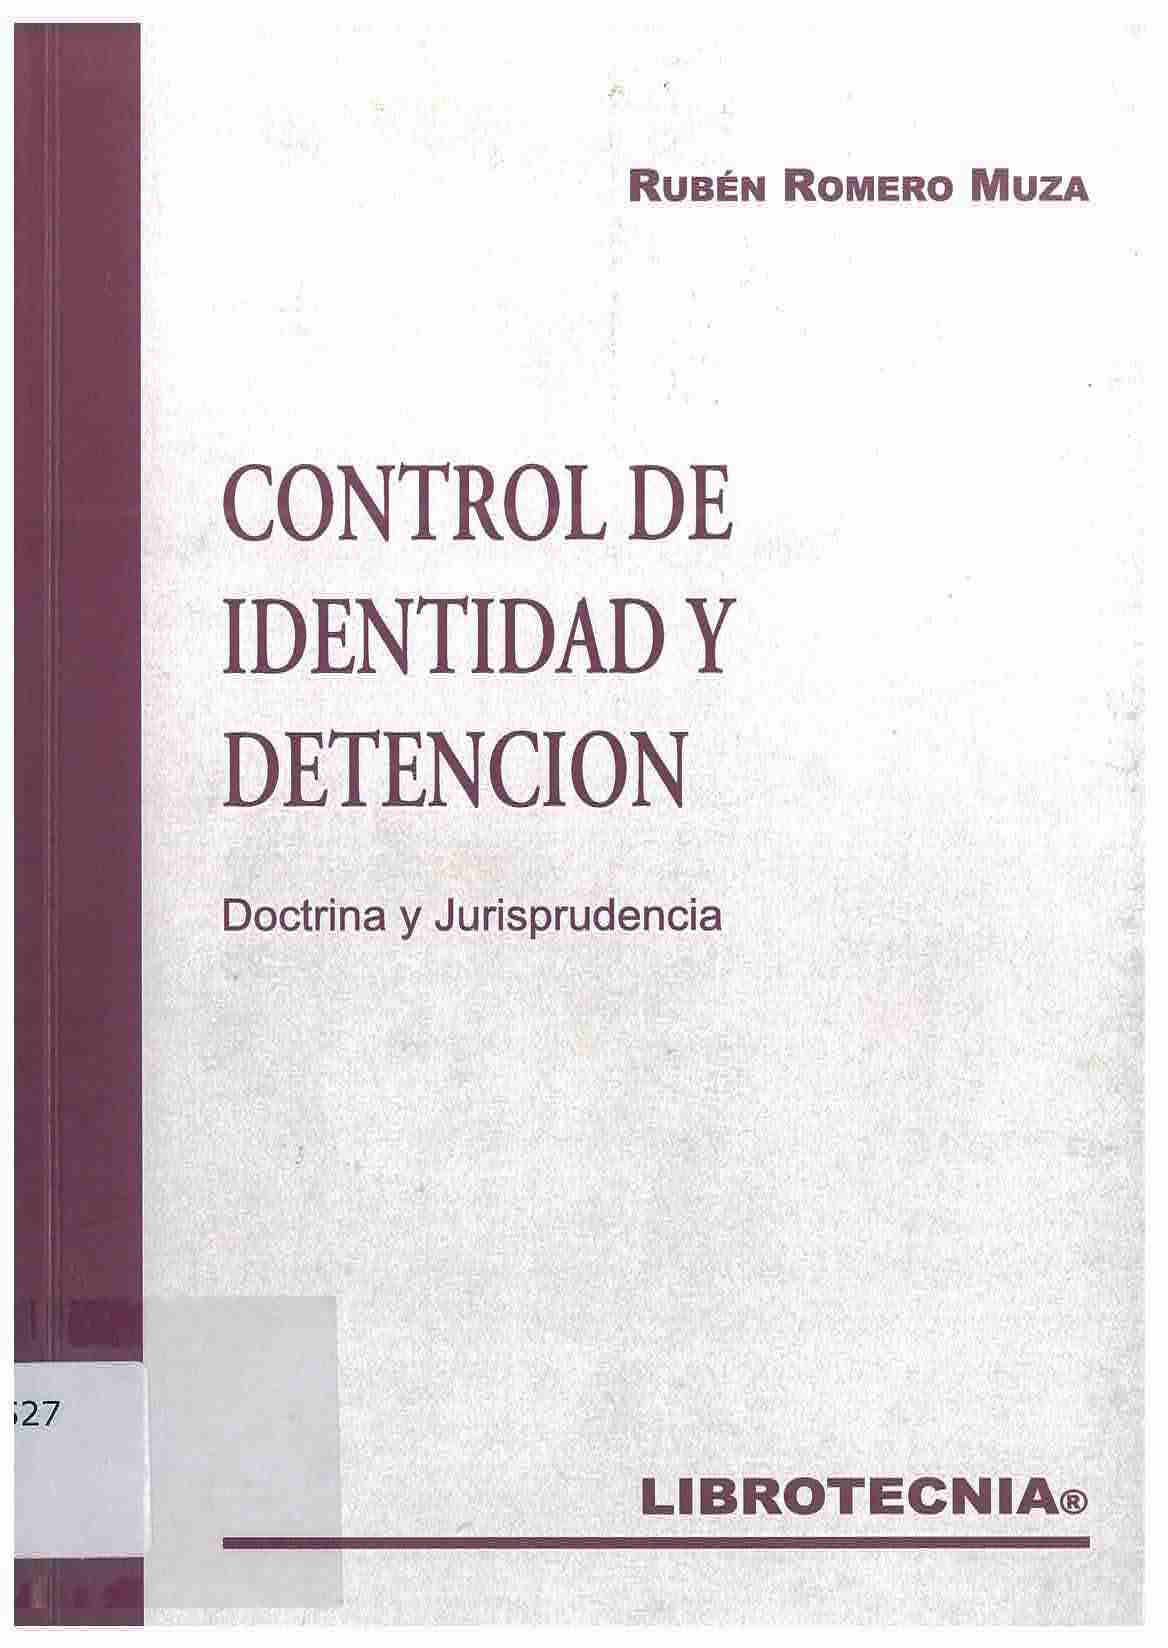 Control de identidad y detención : doctrina y jurisprudencia